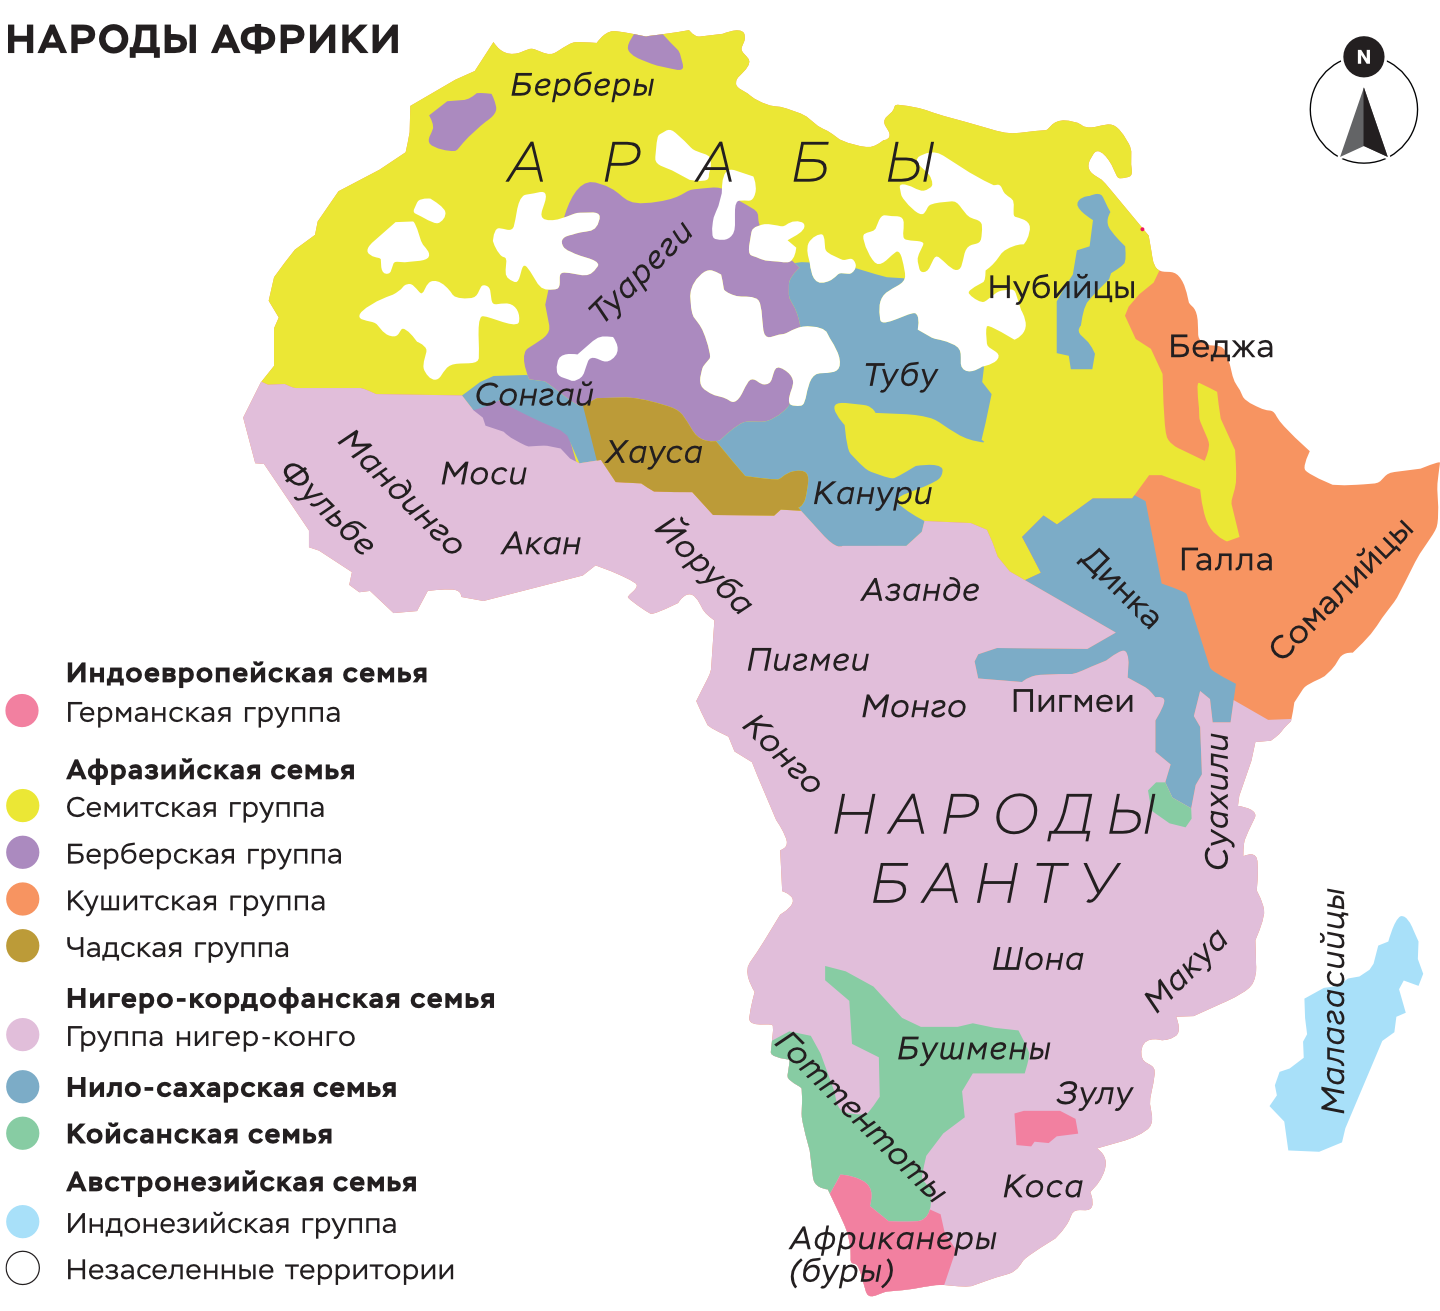 Африканские языки и исторический опыт народов – Наука